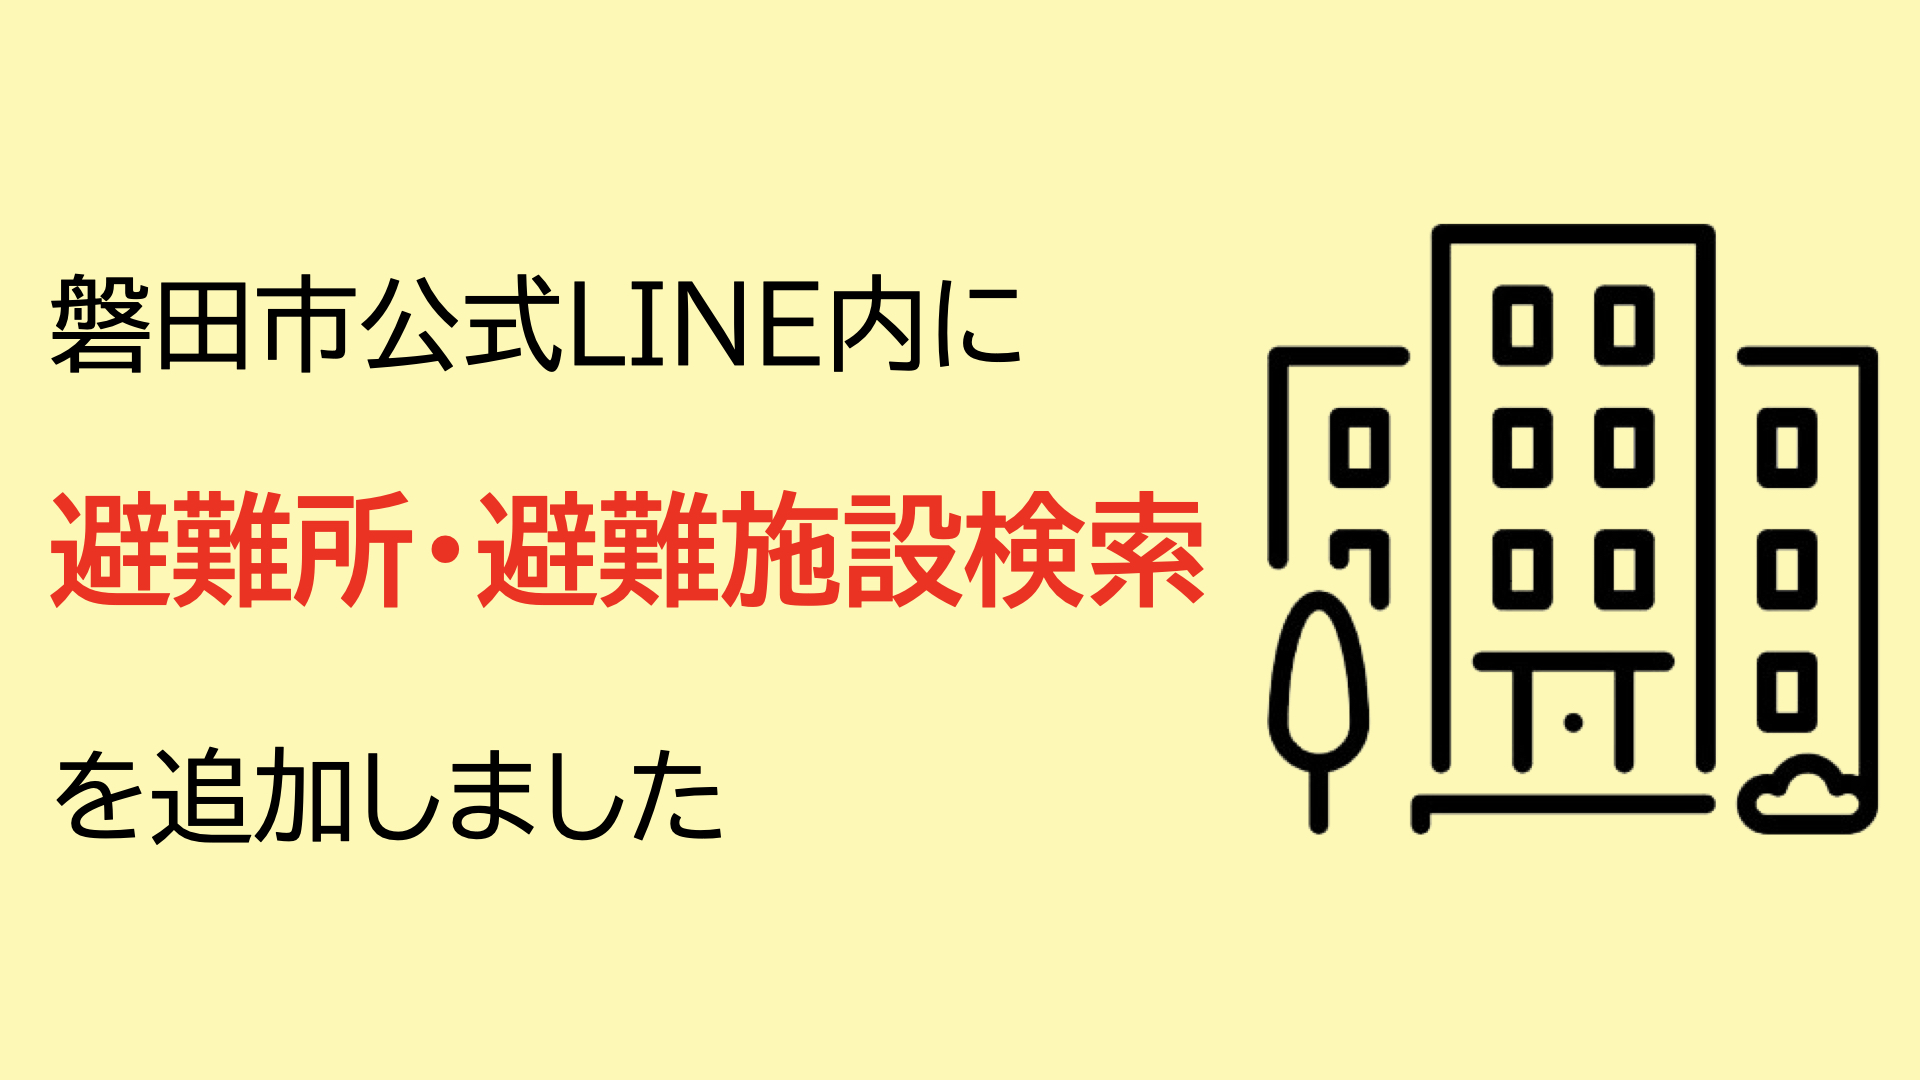 静岡県磐田市、避難所・避難施設の検索機能を公式LINEに追加[ニュース]